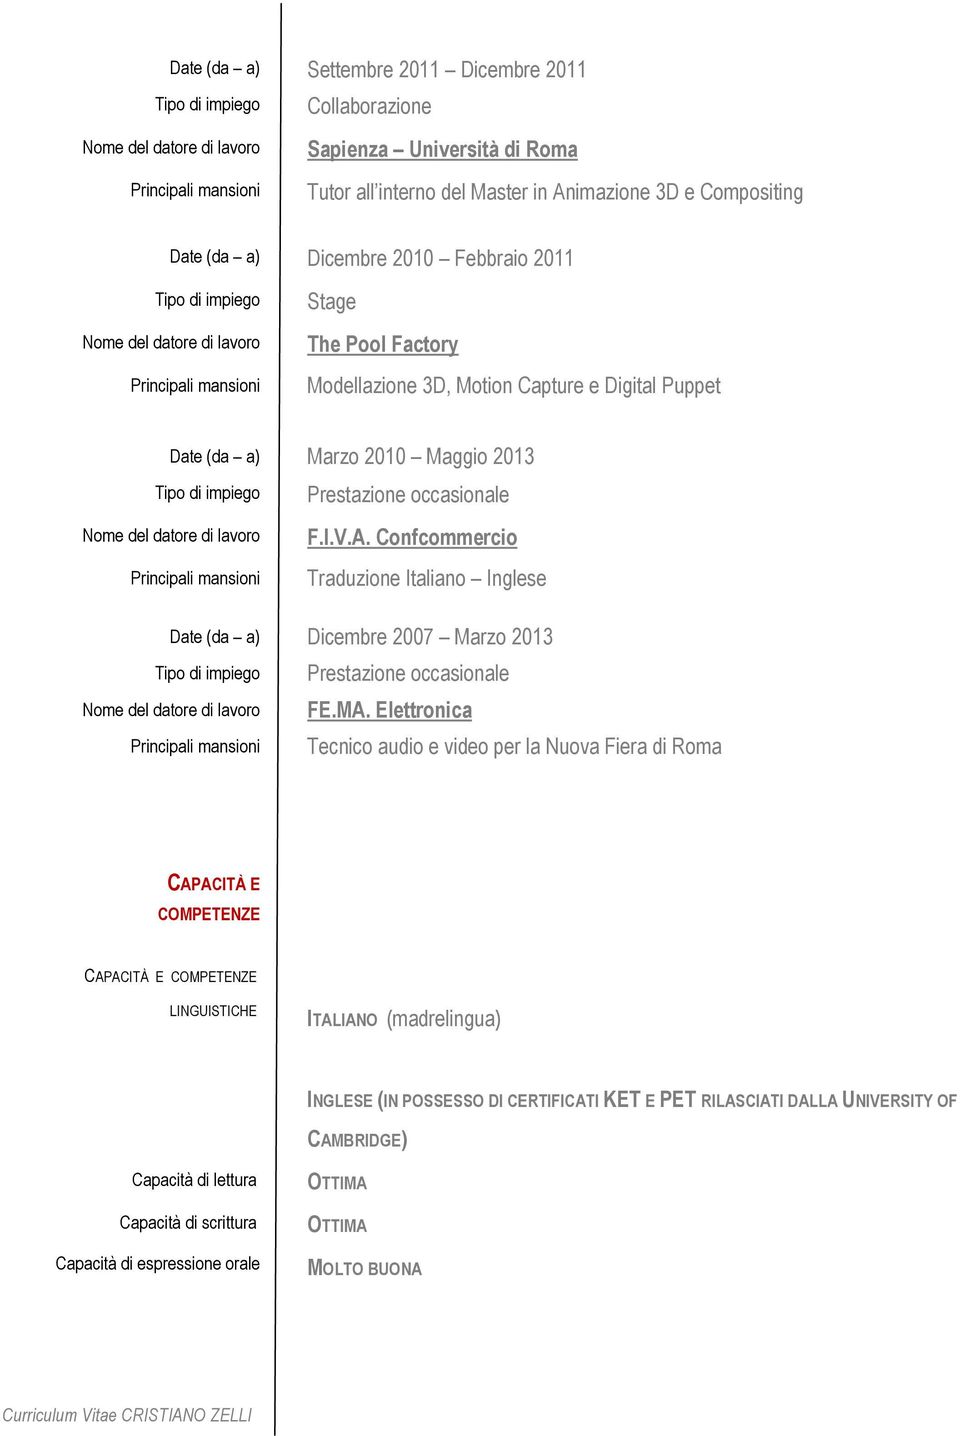 Confcommercio Traduzione Italiano Inglese Date (da a) Dicembre 2007 Marzo 2013 FE.MA.